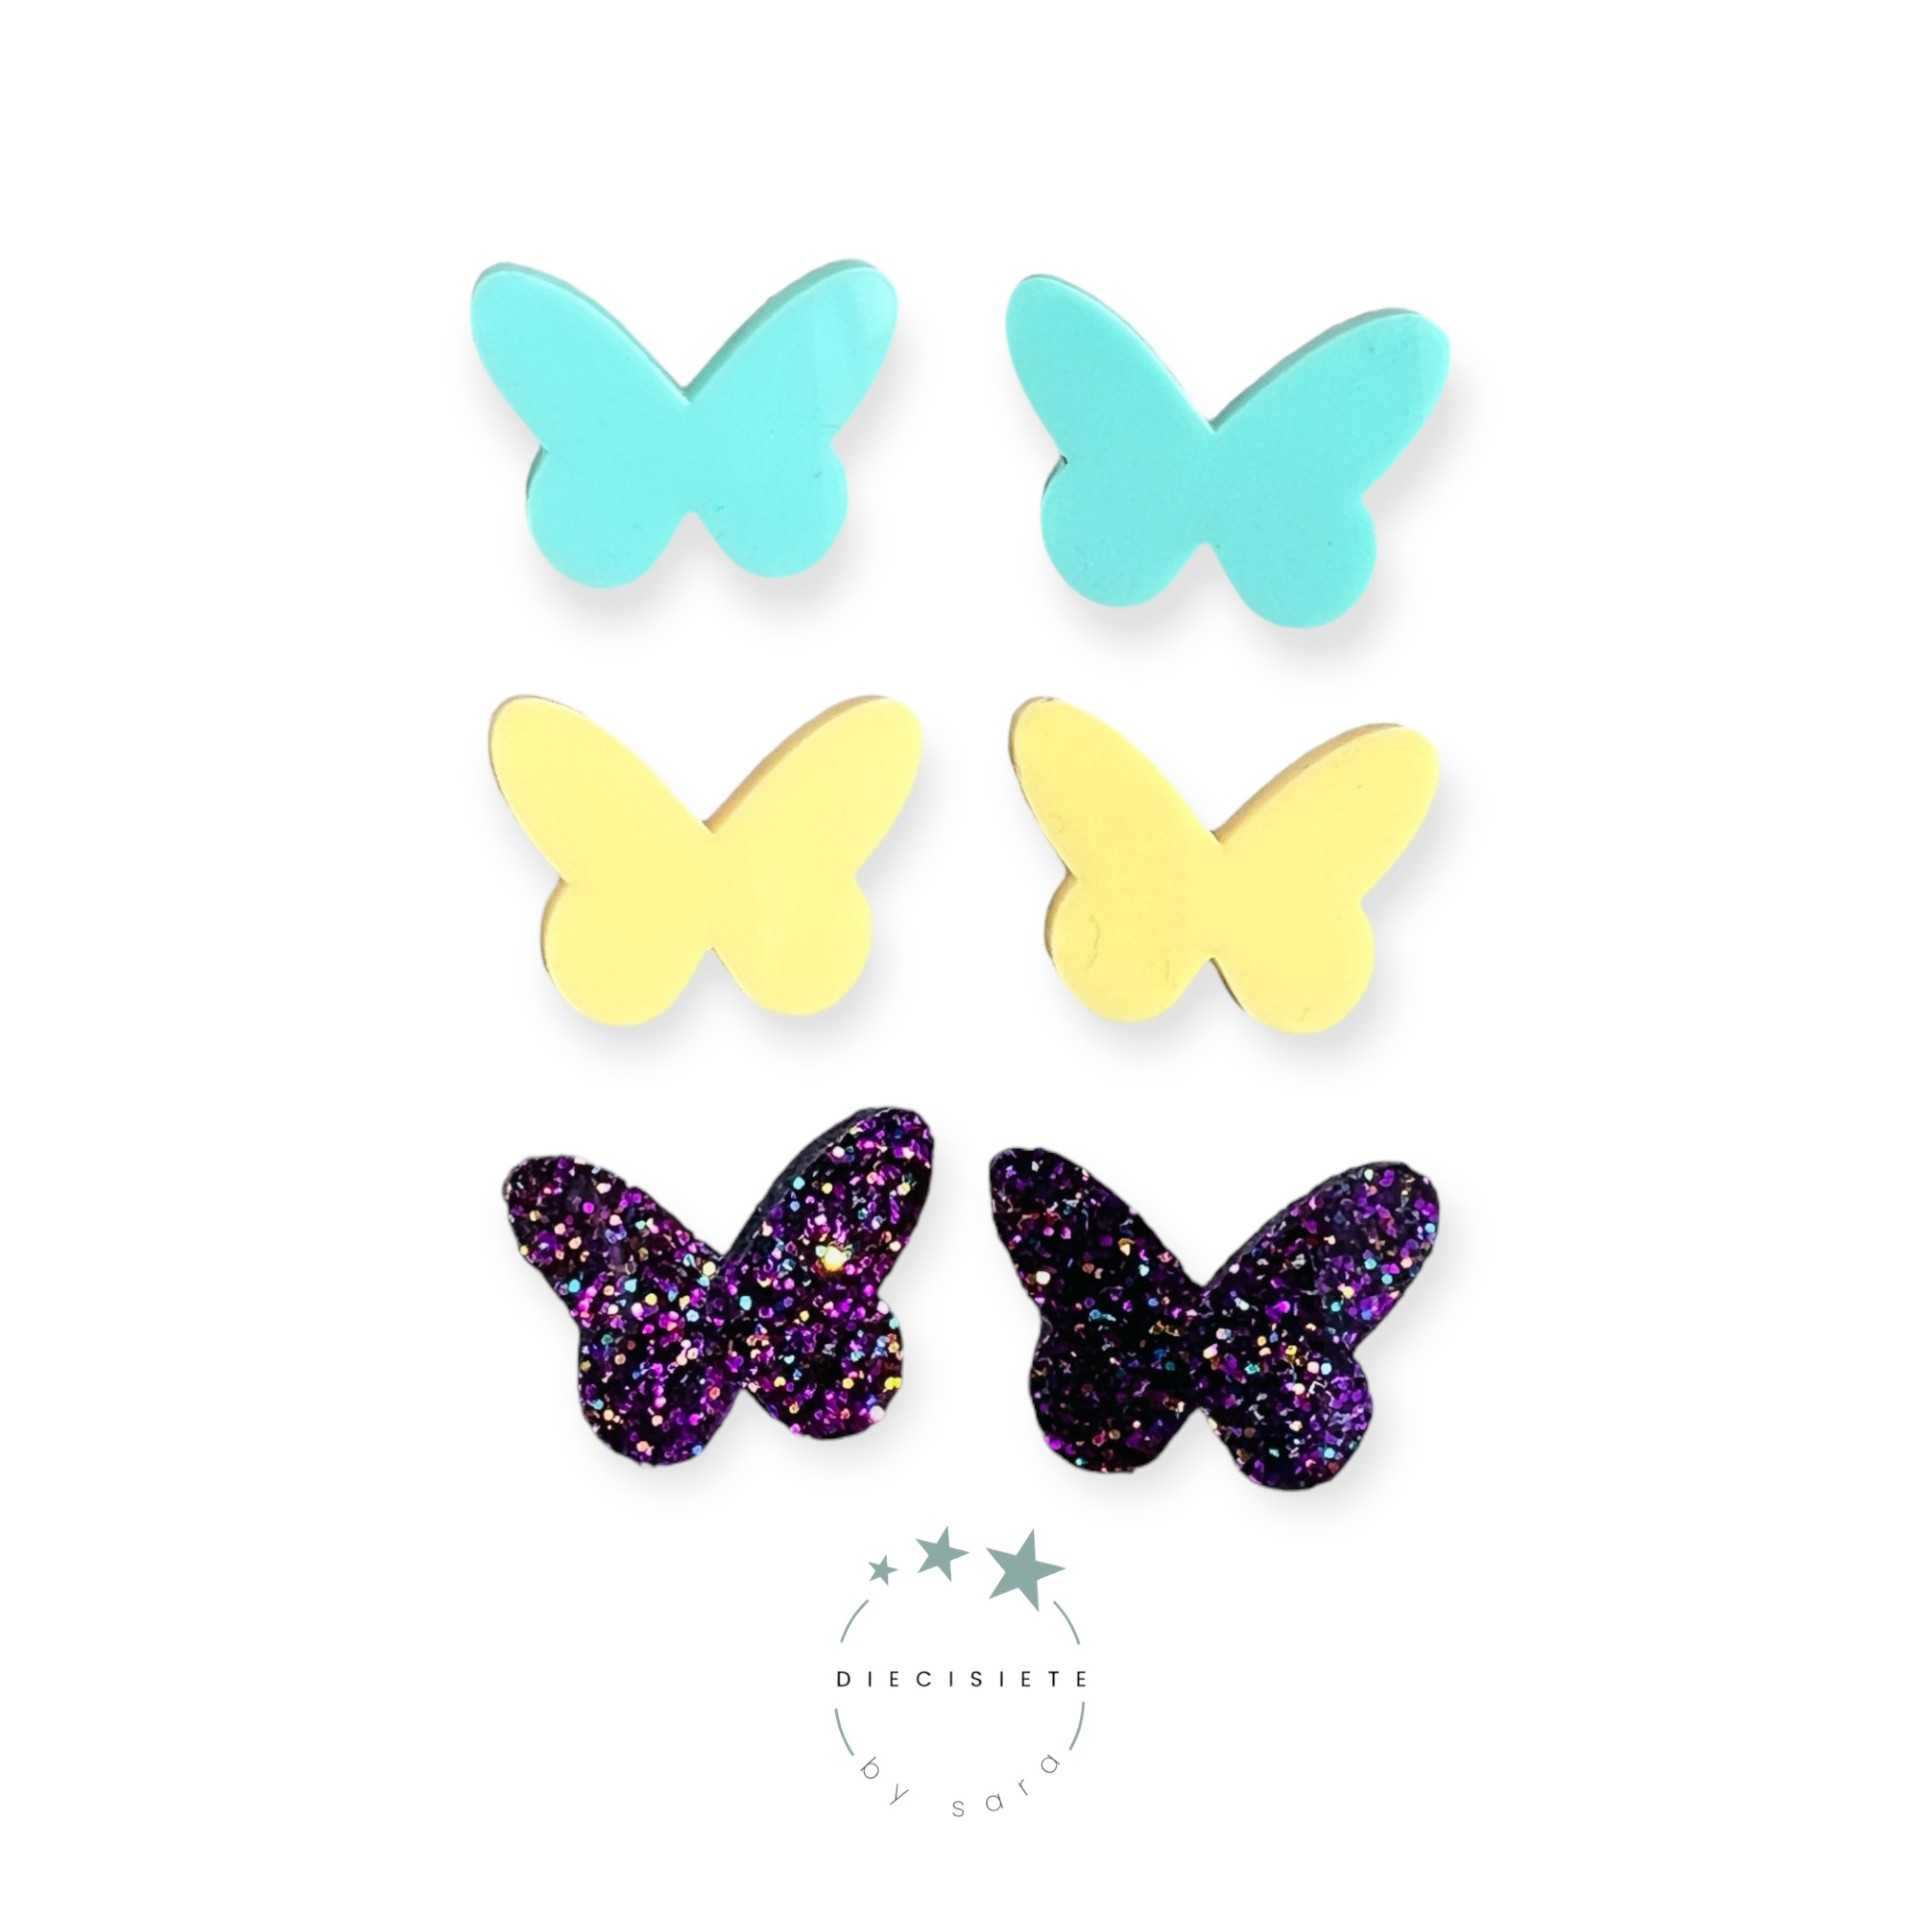 pendientes-colores-mariposa-diecisiete-by-sara-joyeria-acebo